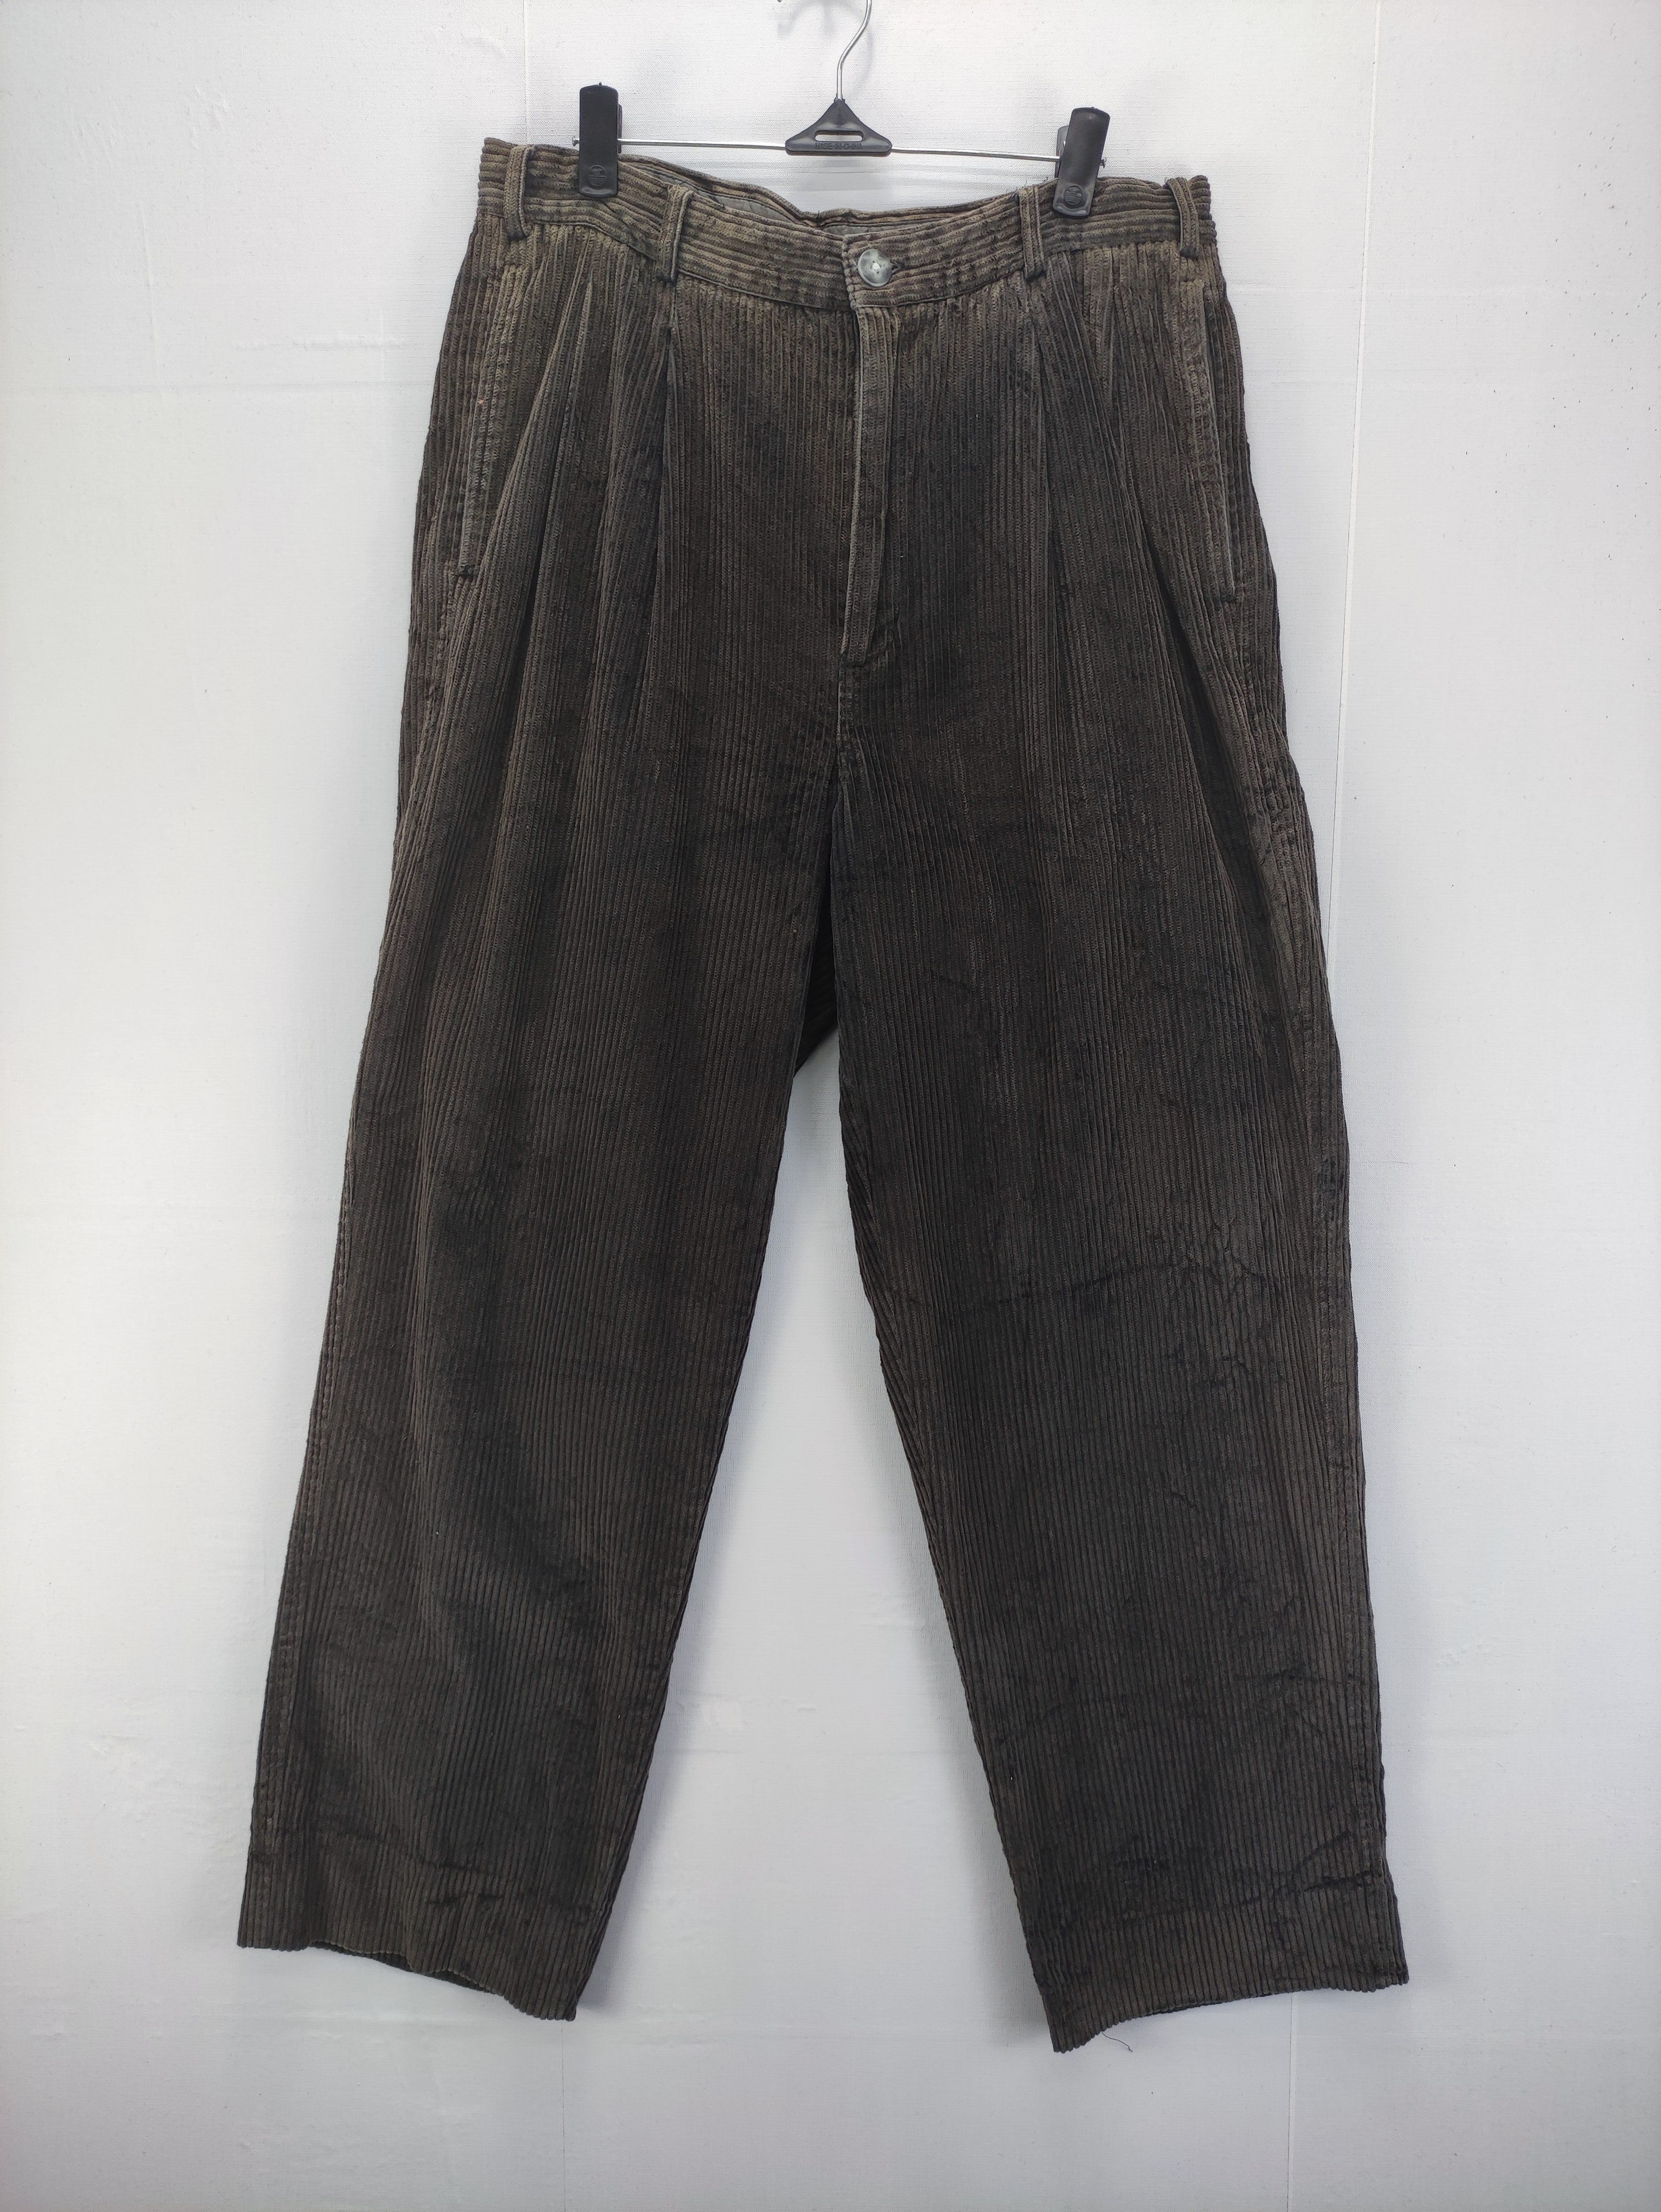 Vintage Nike Cuduroy Pants - 1